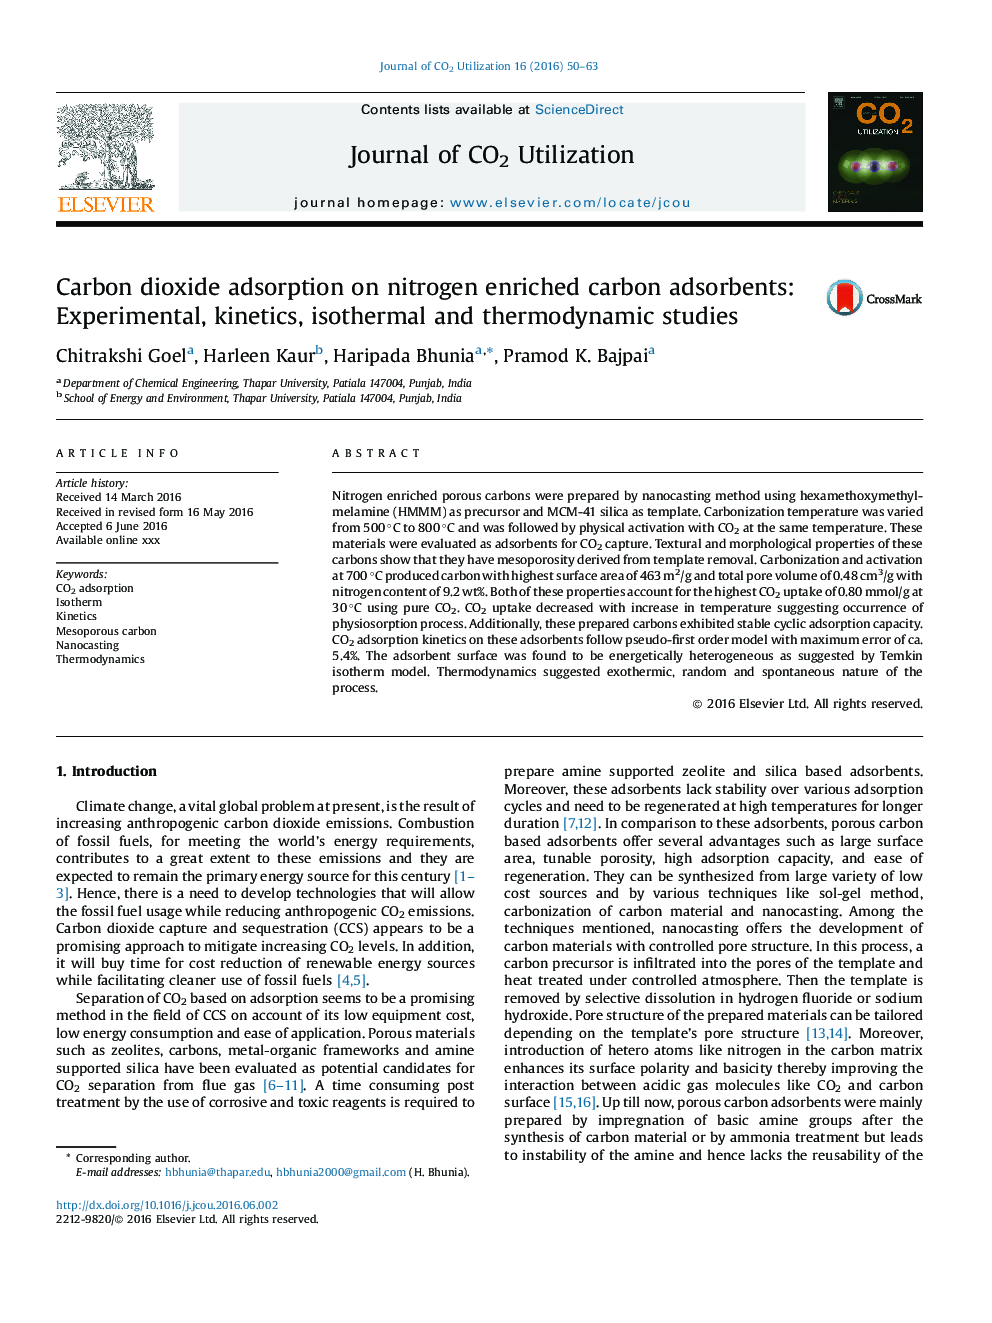 جذب دی اکسید کربن در جاذب های کربن با غنای نیتروژن: مطالعات تجربی، سینتیک، همدما و ترمودینامیکی 